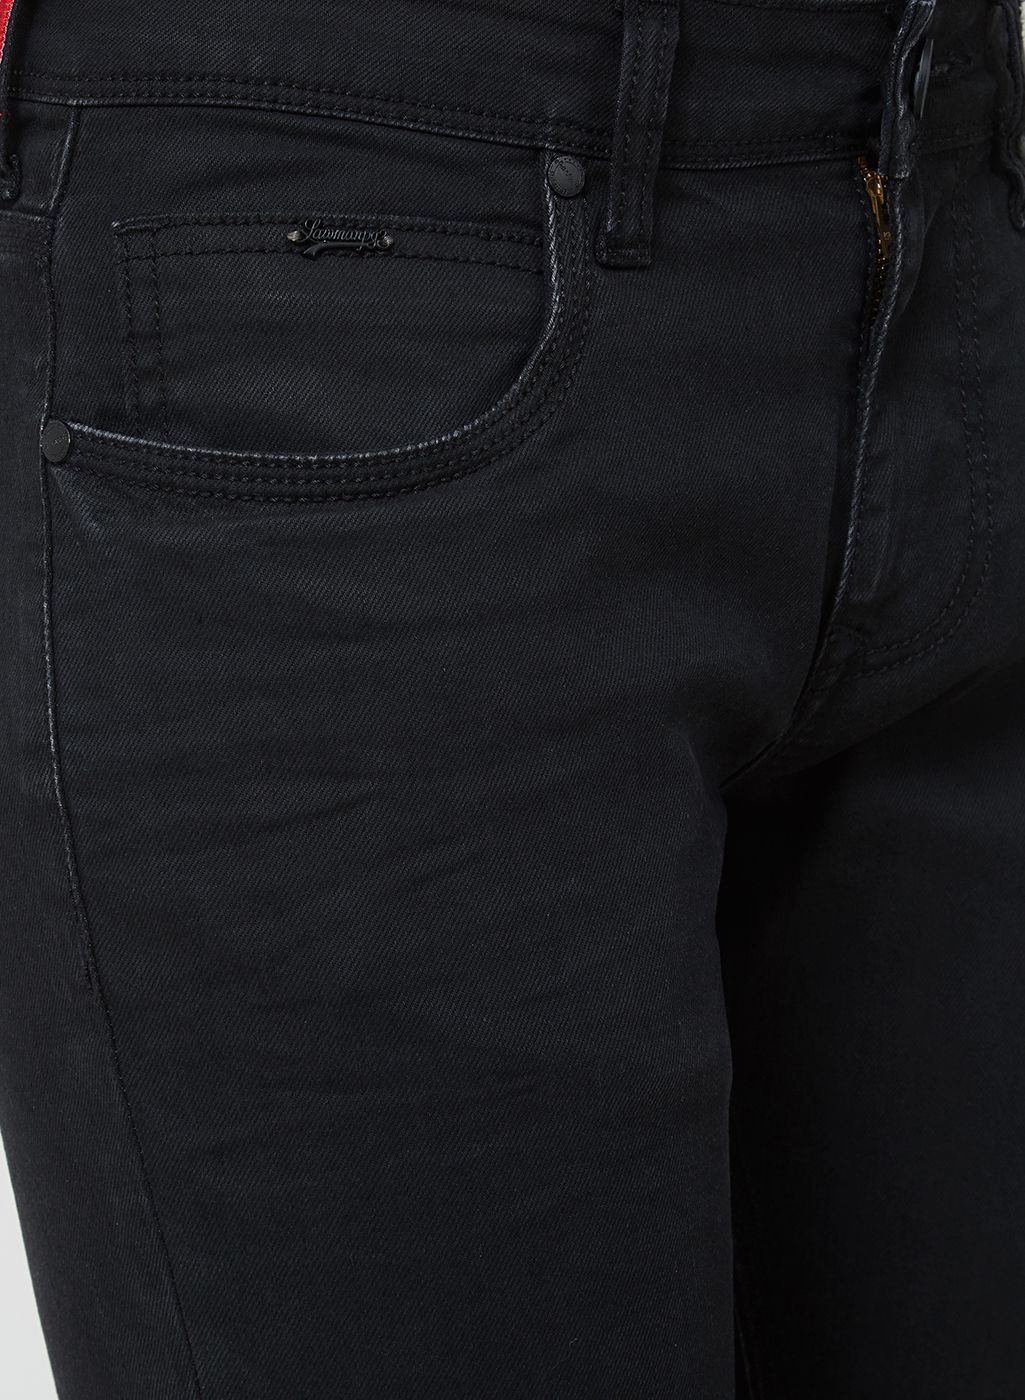 LAWMAN PG3 Black Slim Jeans - Buy LAWMAN PG3 Black Slim Jeans Online at ...